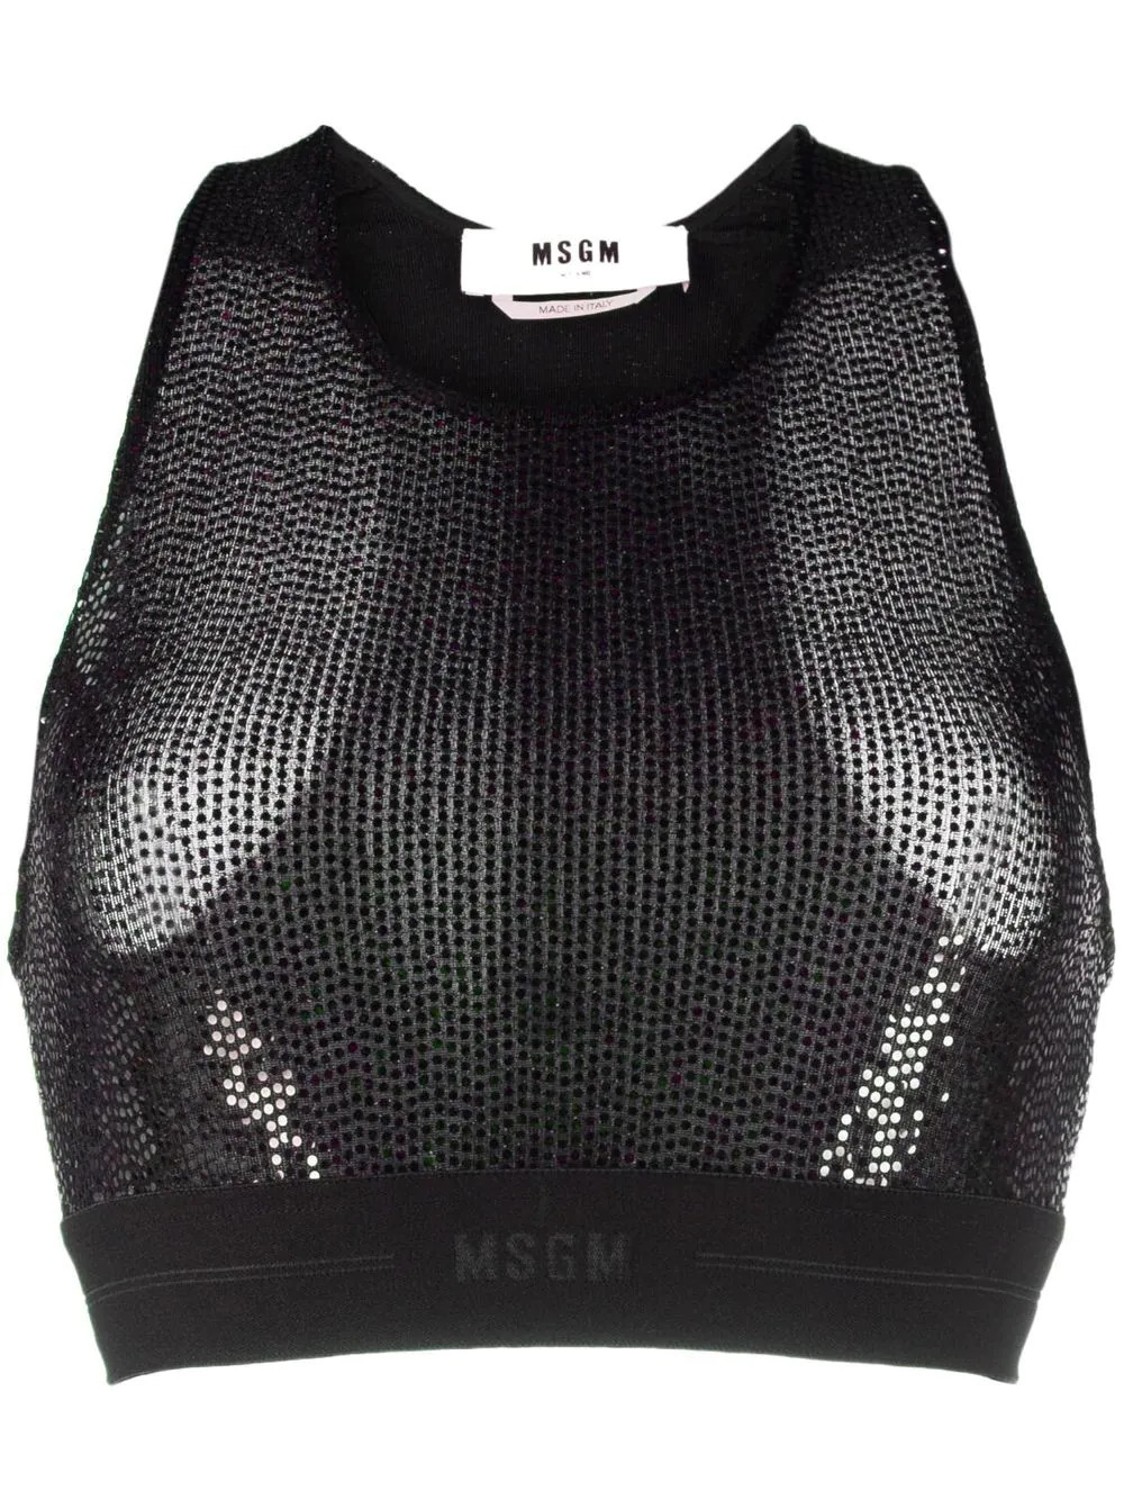 shop MSGM Saldi Tops: Tops MSGM, top corto, sotto giacca, modello sportivo, in micro paillettes nere.

Composizione: 87% poliammide, 8% poliestere, 5% elastan. number 2457